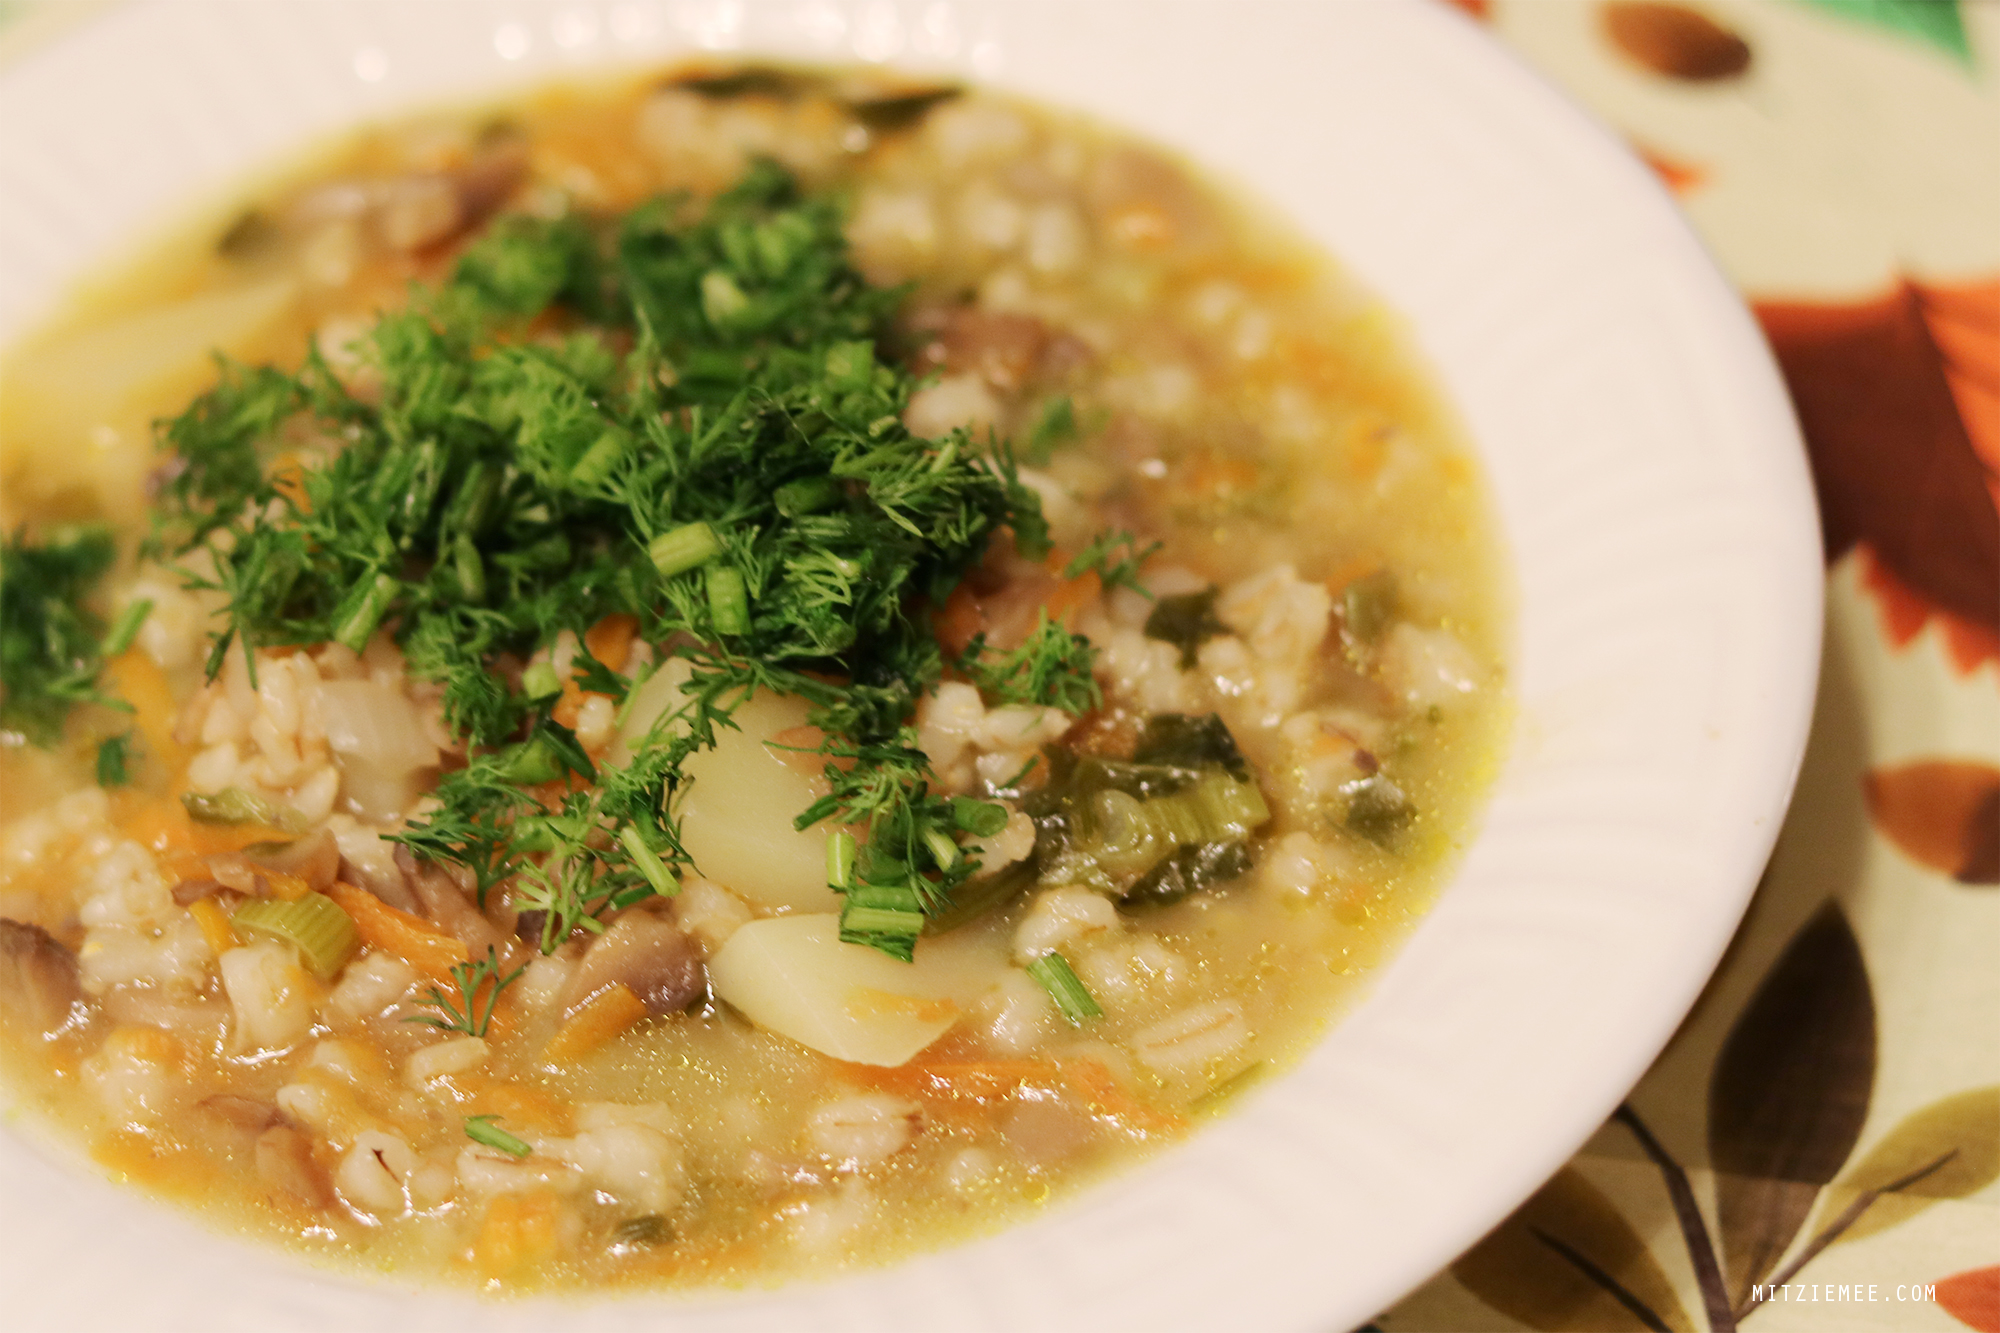 Elena's homemade soup